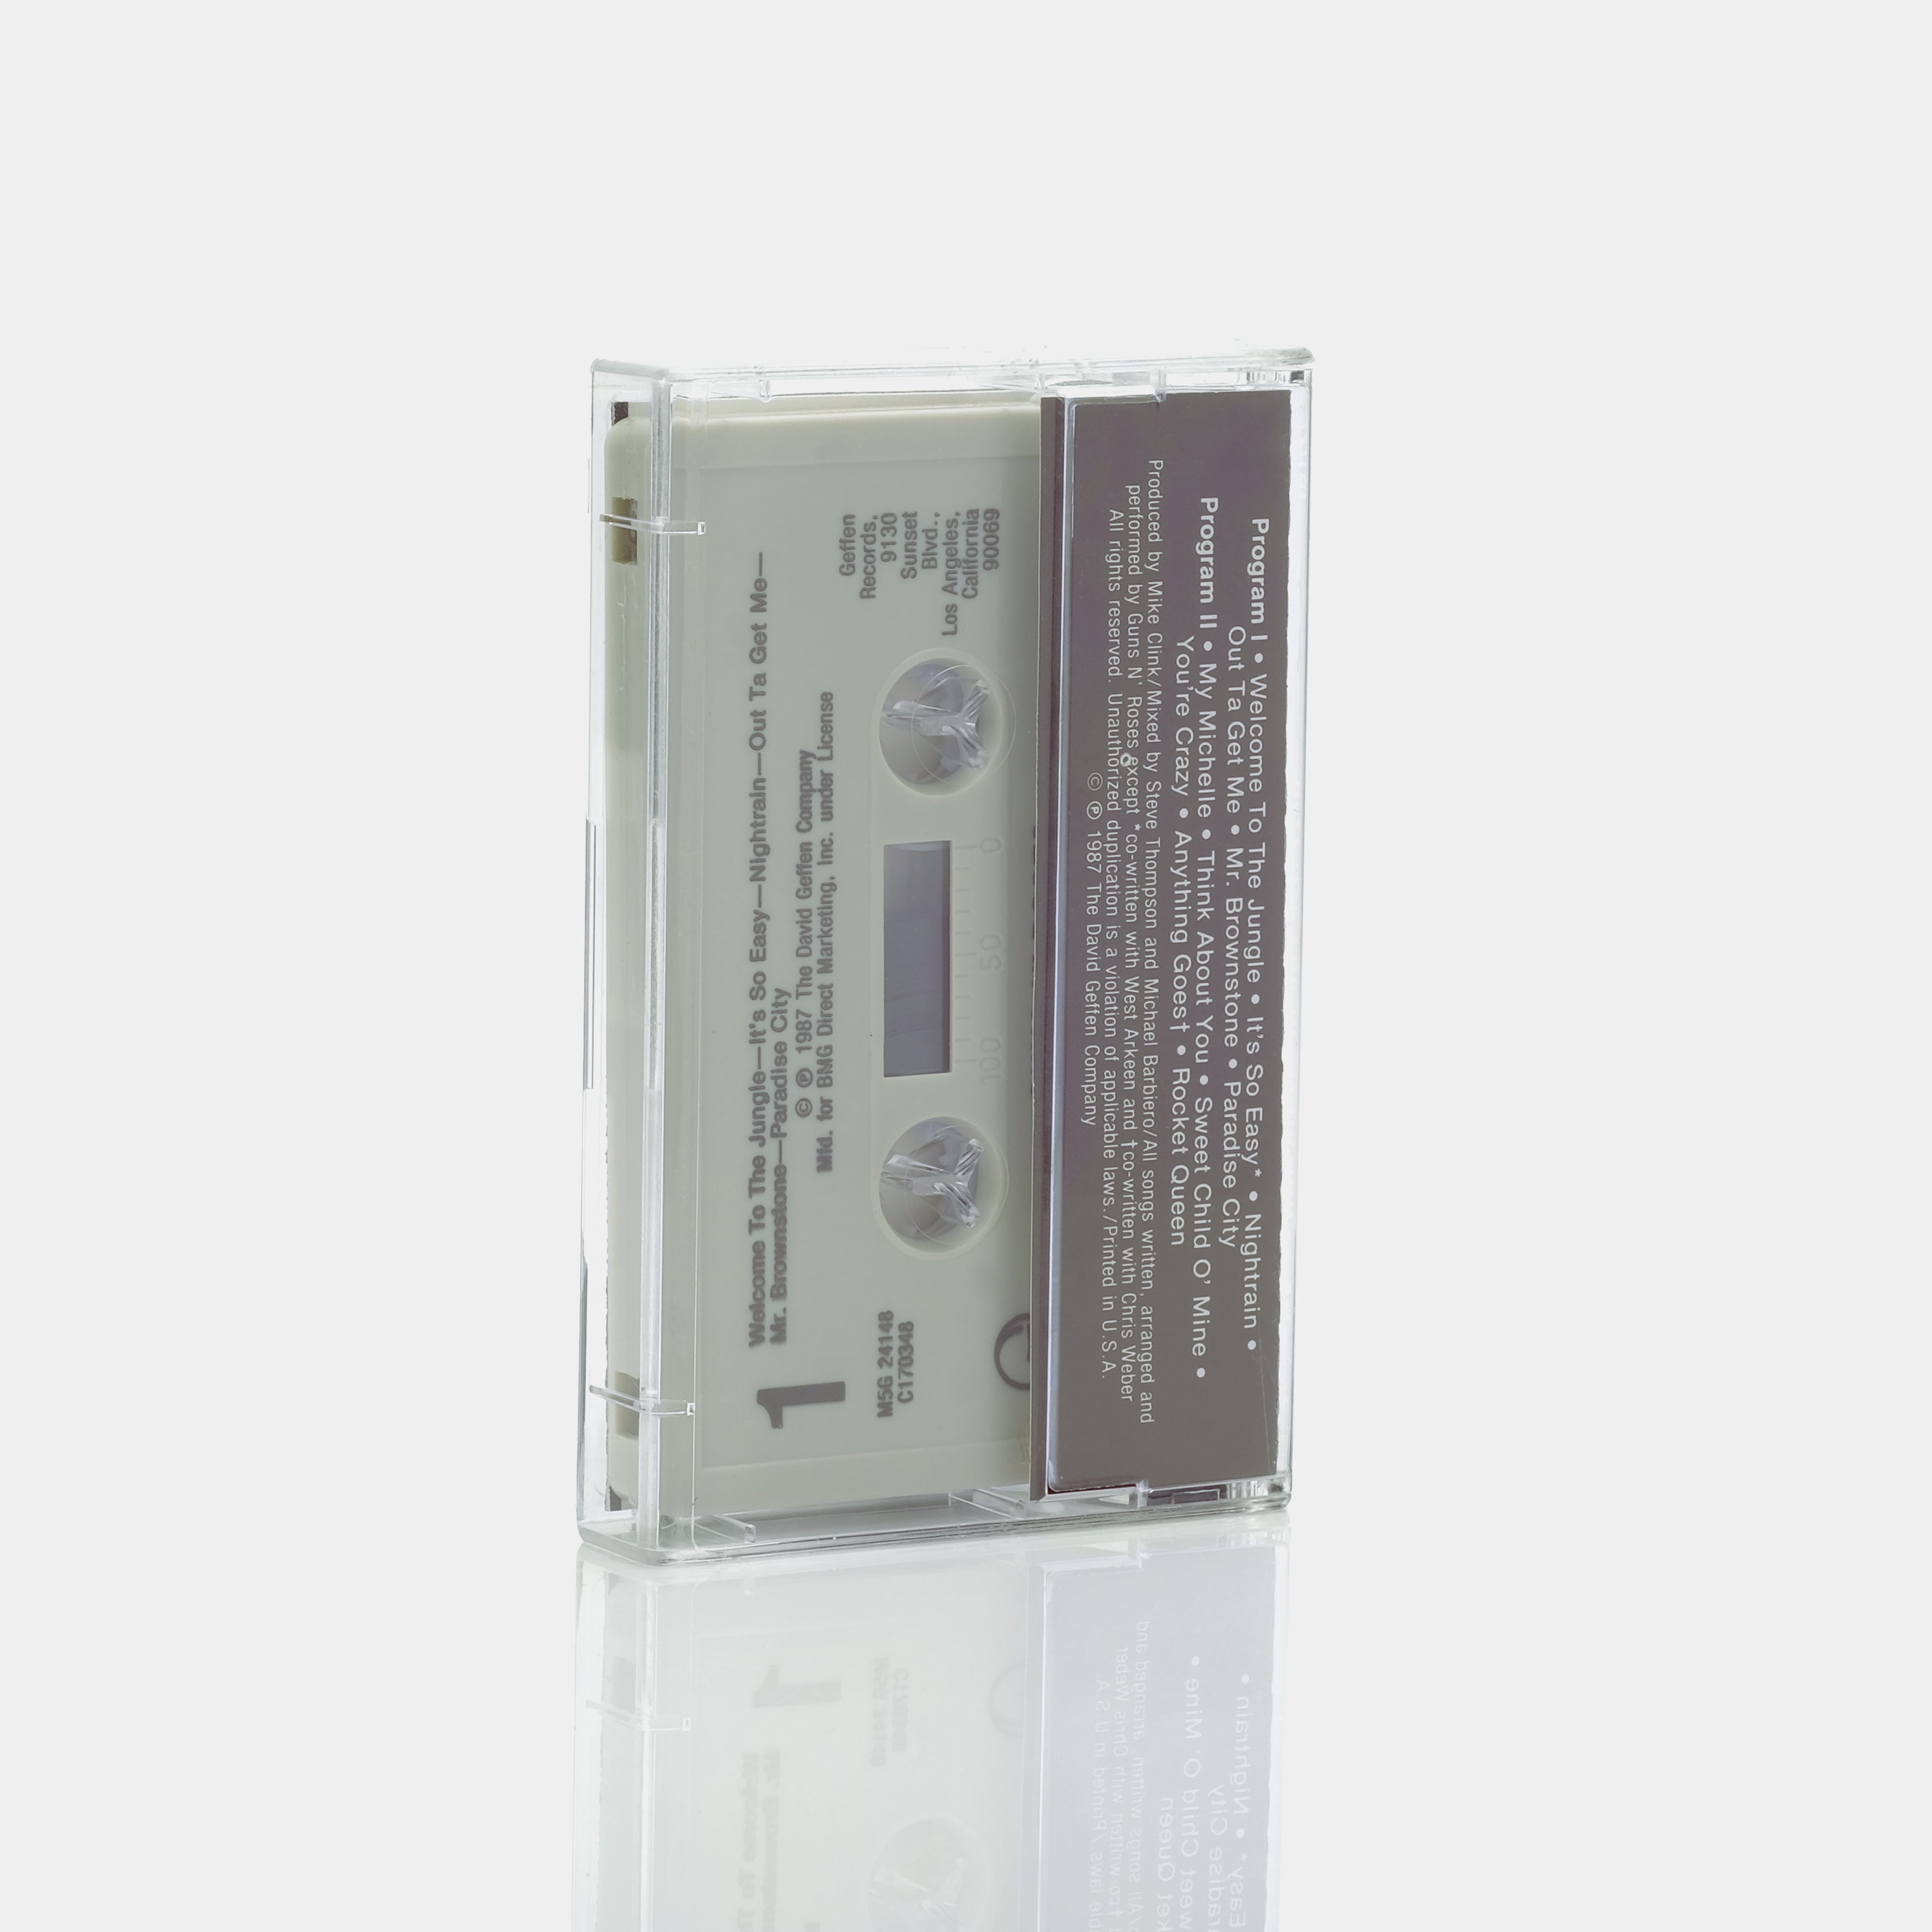 Guns N' Roses - Appetite For Destruction Cassette Tape